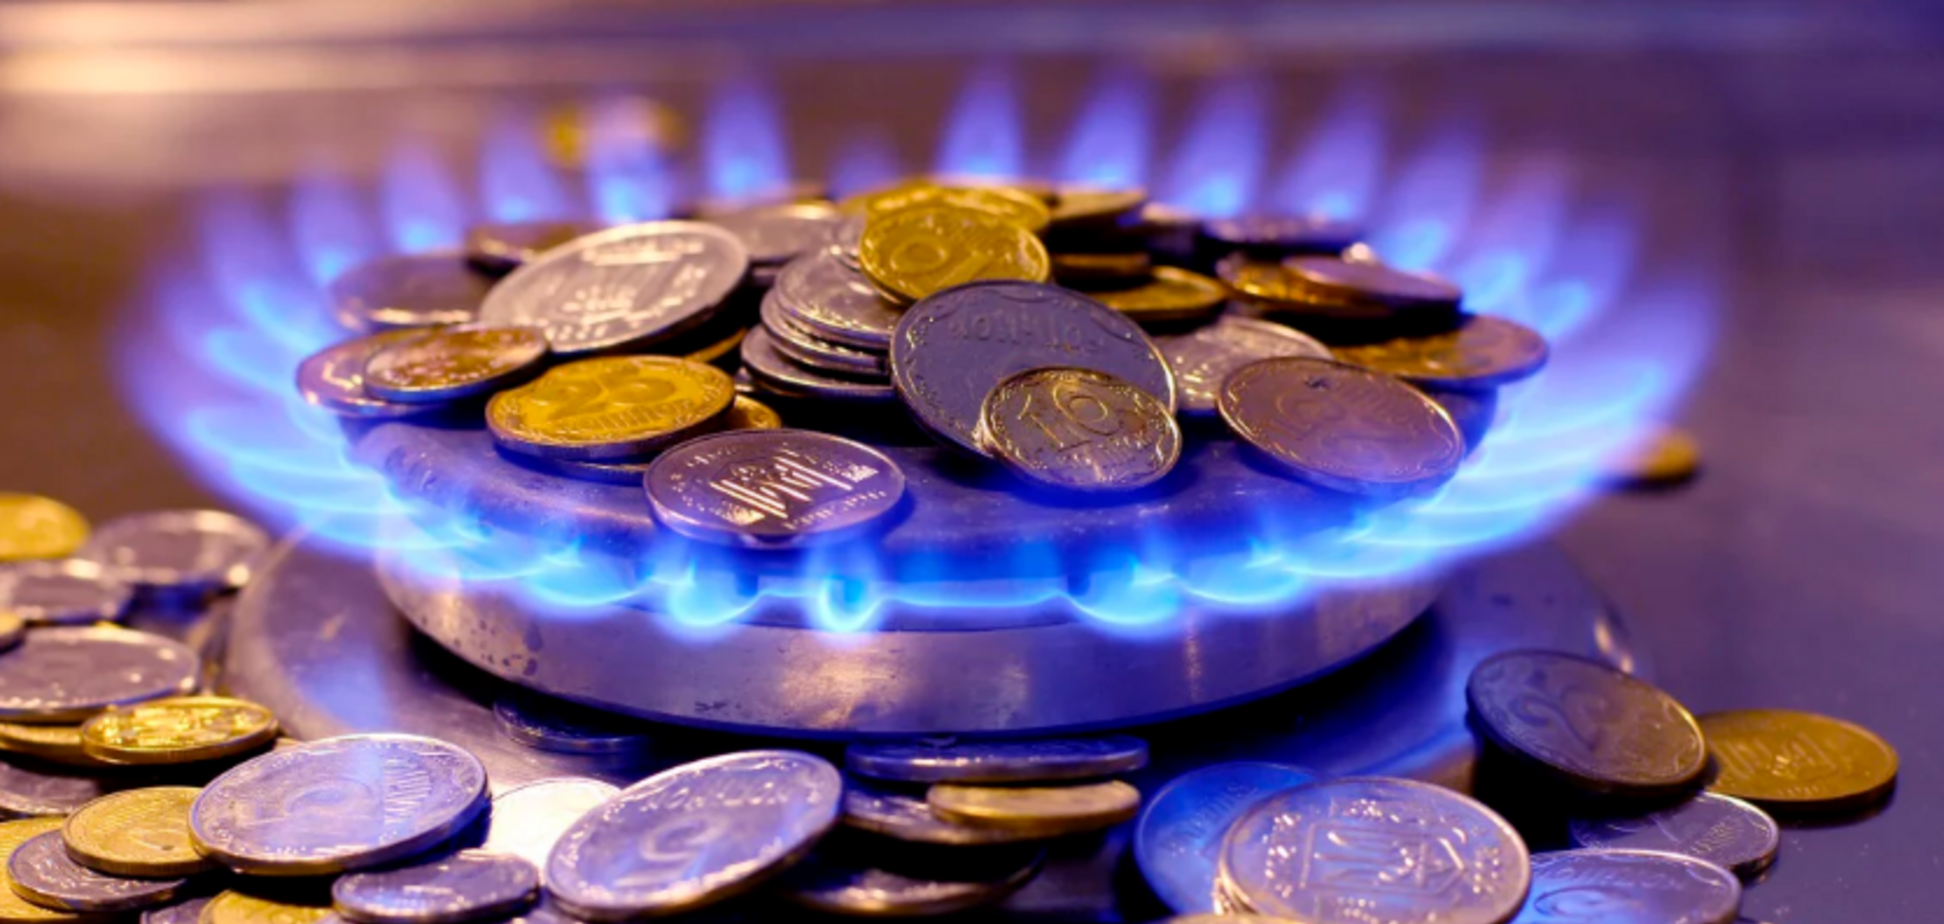 Рост цен на газ может привести к социальному взрыву - Митько